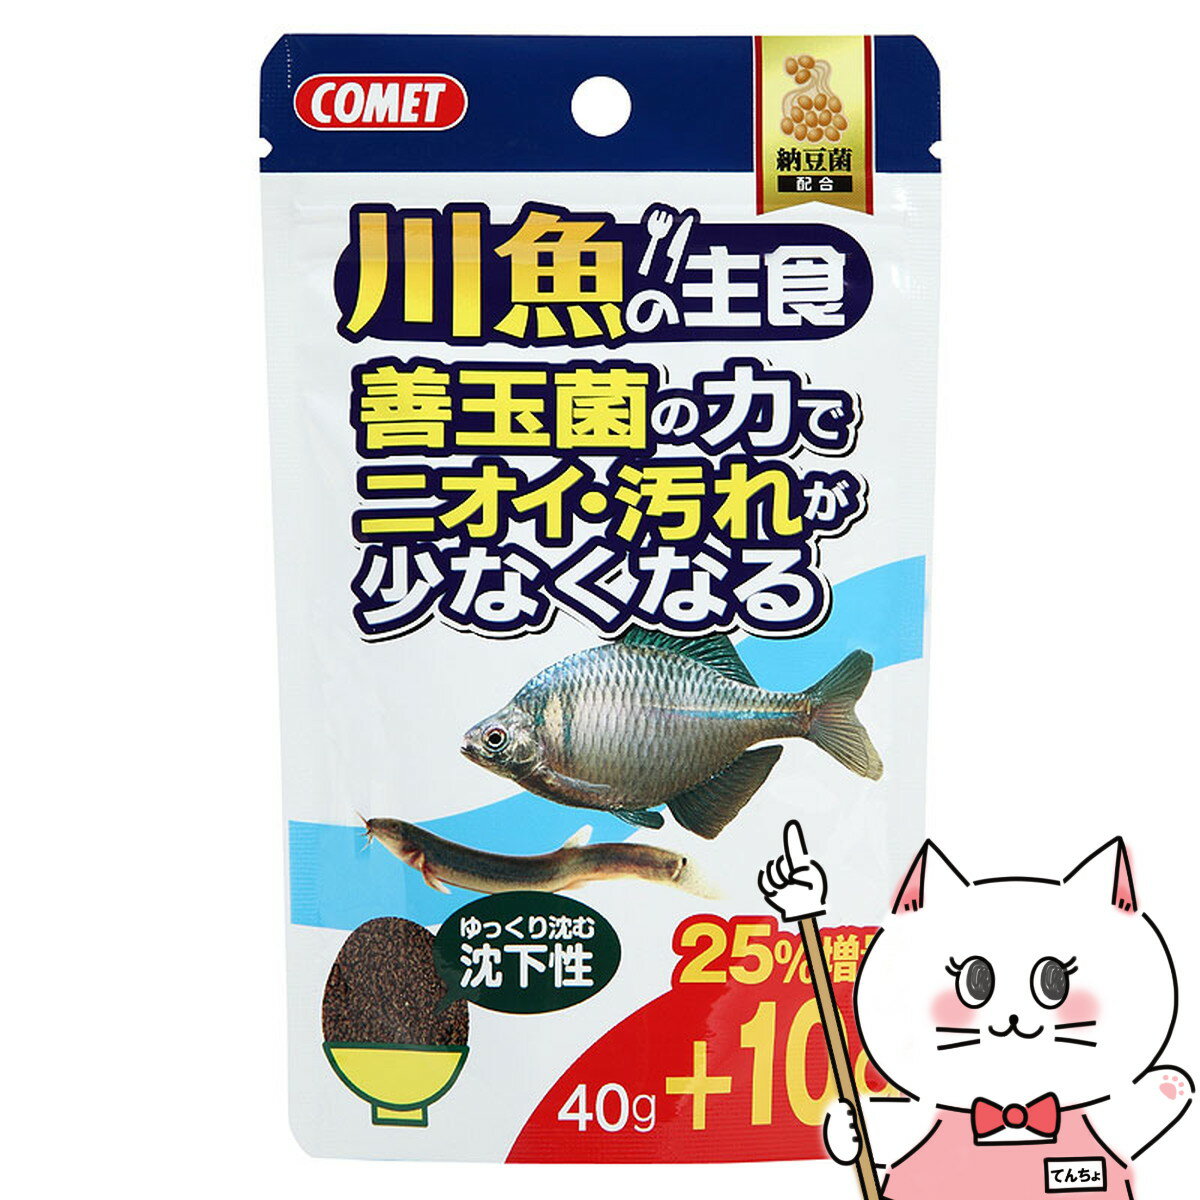 イトスイ コメット 川魚の主食 納豆菌 40g+10g【happiest】【SBT】 6030318 